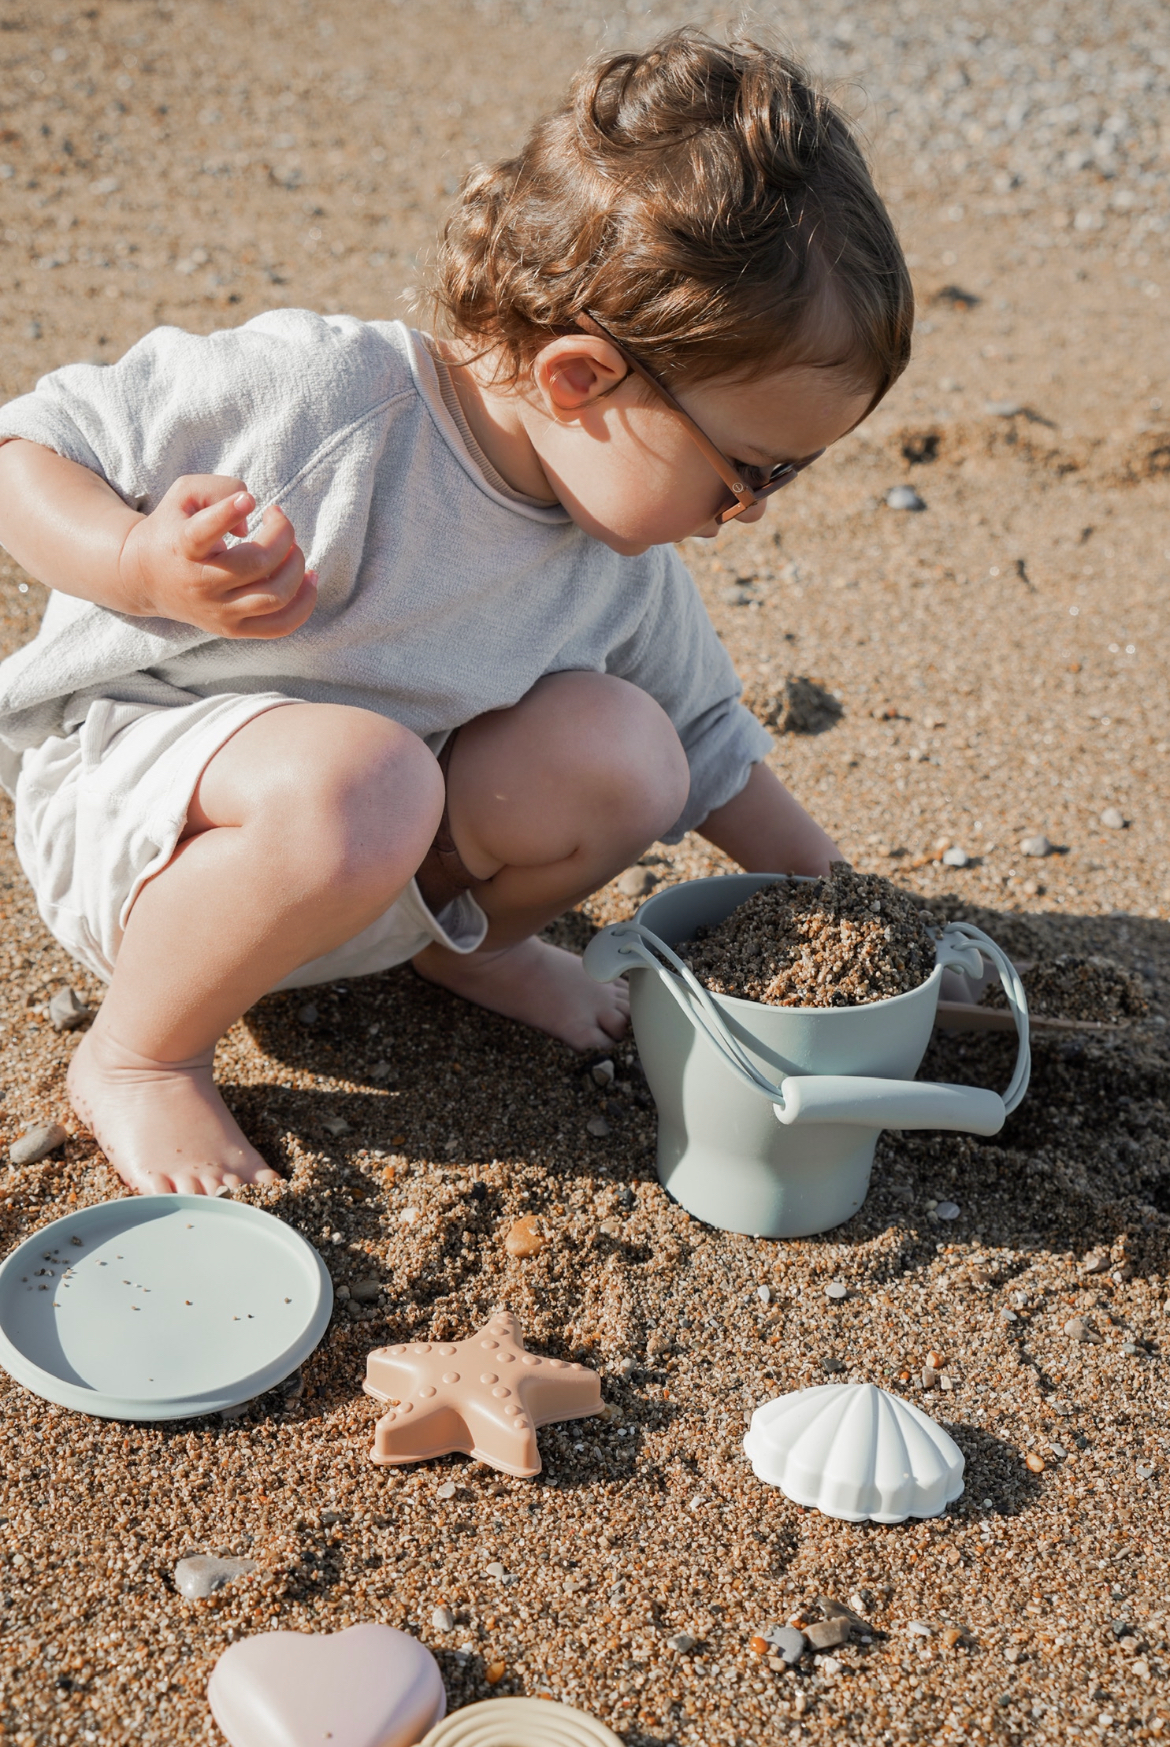 Petit enfant jouant dans le sable avec le set de jouets de plage en silicone Leo et Lea. Premier chateau de sable sous le soleil. Le petit garçon porte un ensemble blanc et gris, et des lunettes de soleil. Ses cheveux bouclés volent au vent. 